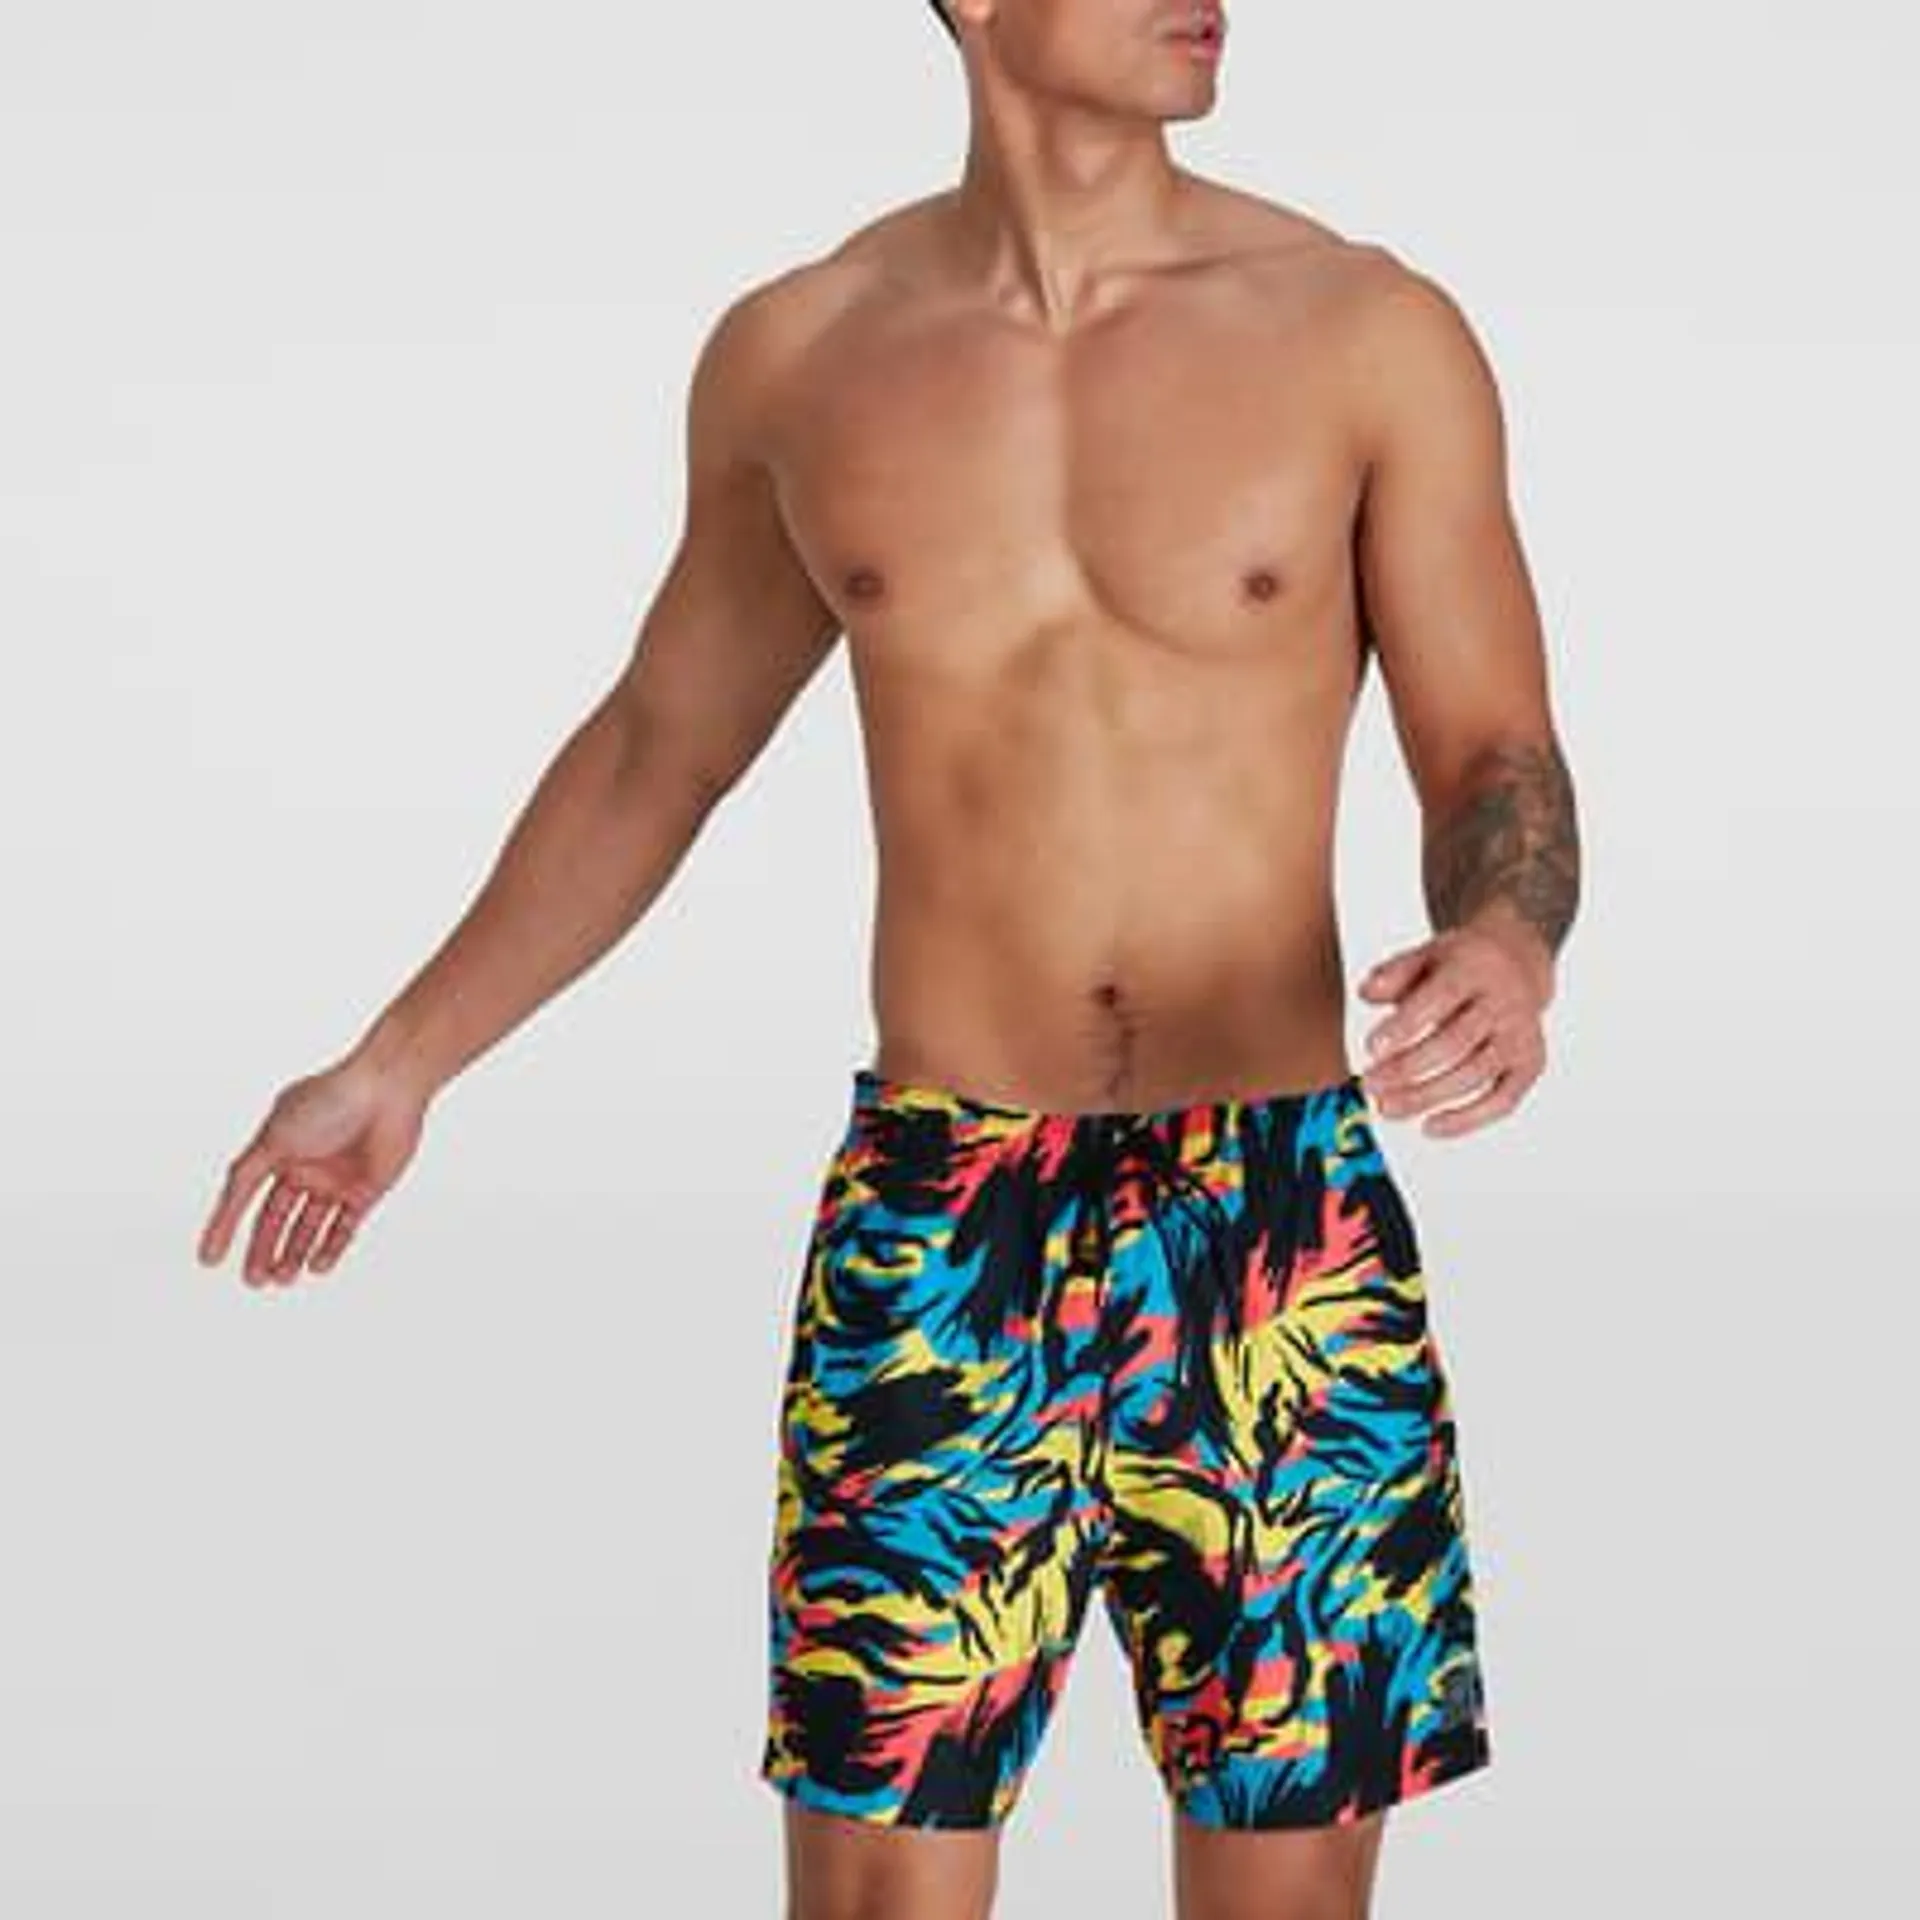 Dive In: Men's Swimwear